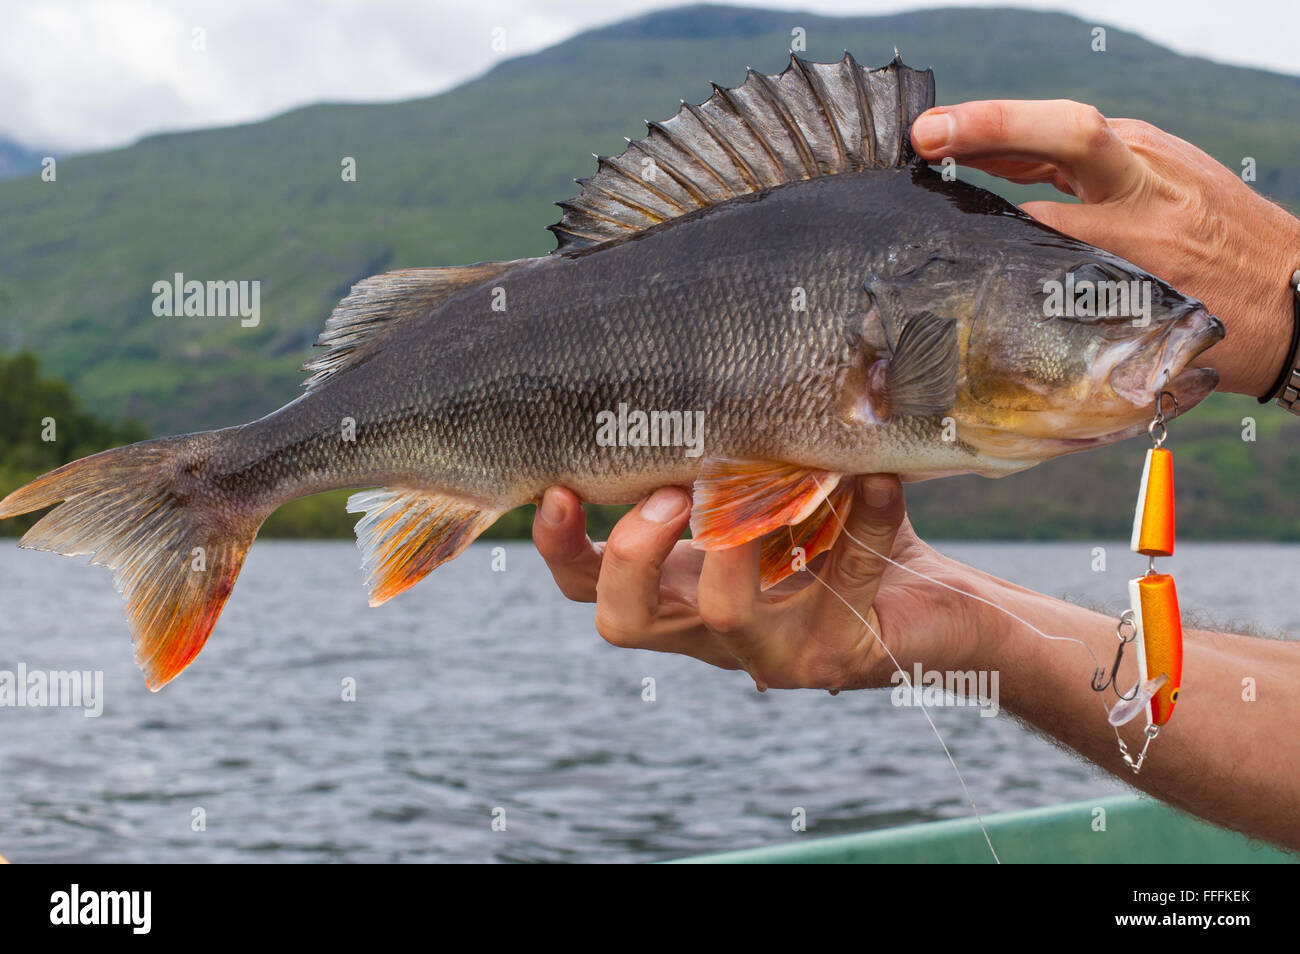 Pris avec une perche grosse boule orange sur les mains d'un pêcheur. Lac et Montagne en arrière-plan. Banque D'Images